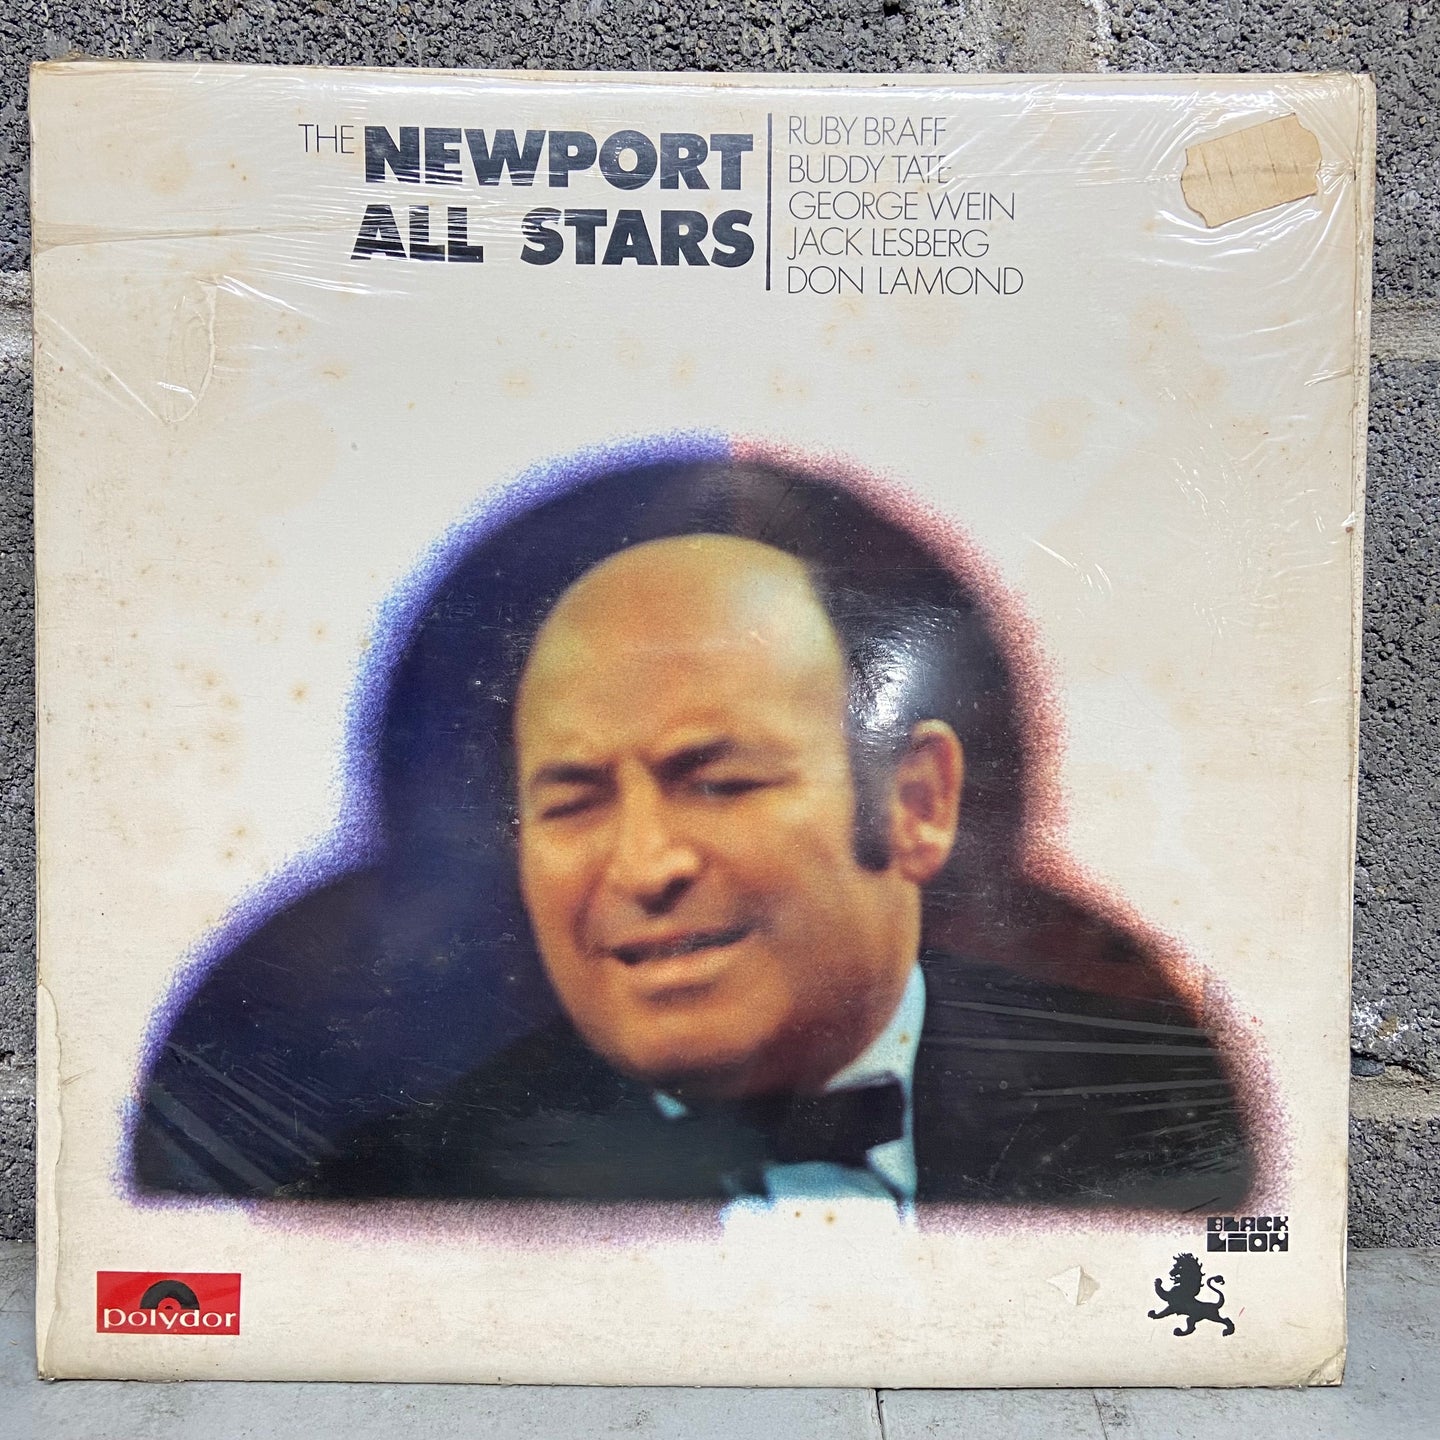 The Newport All Stars